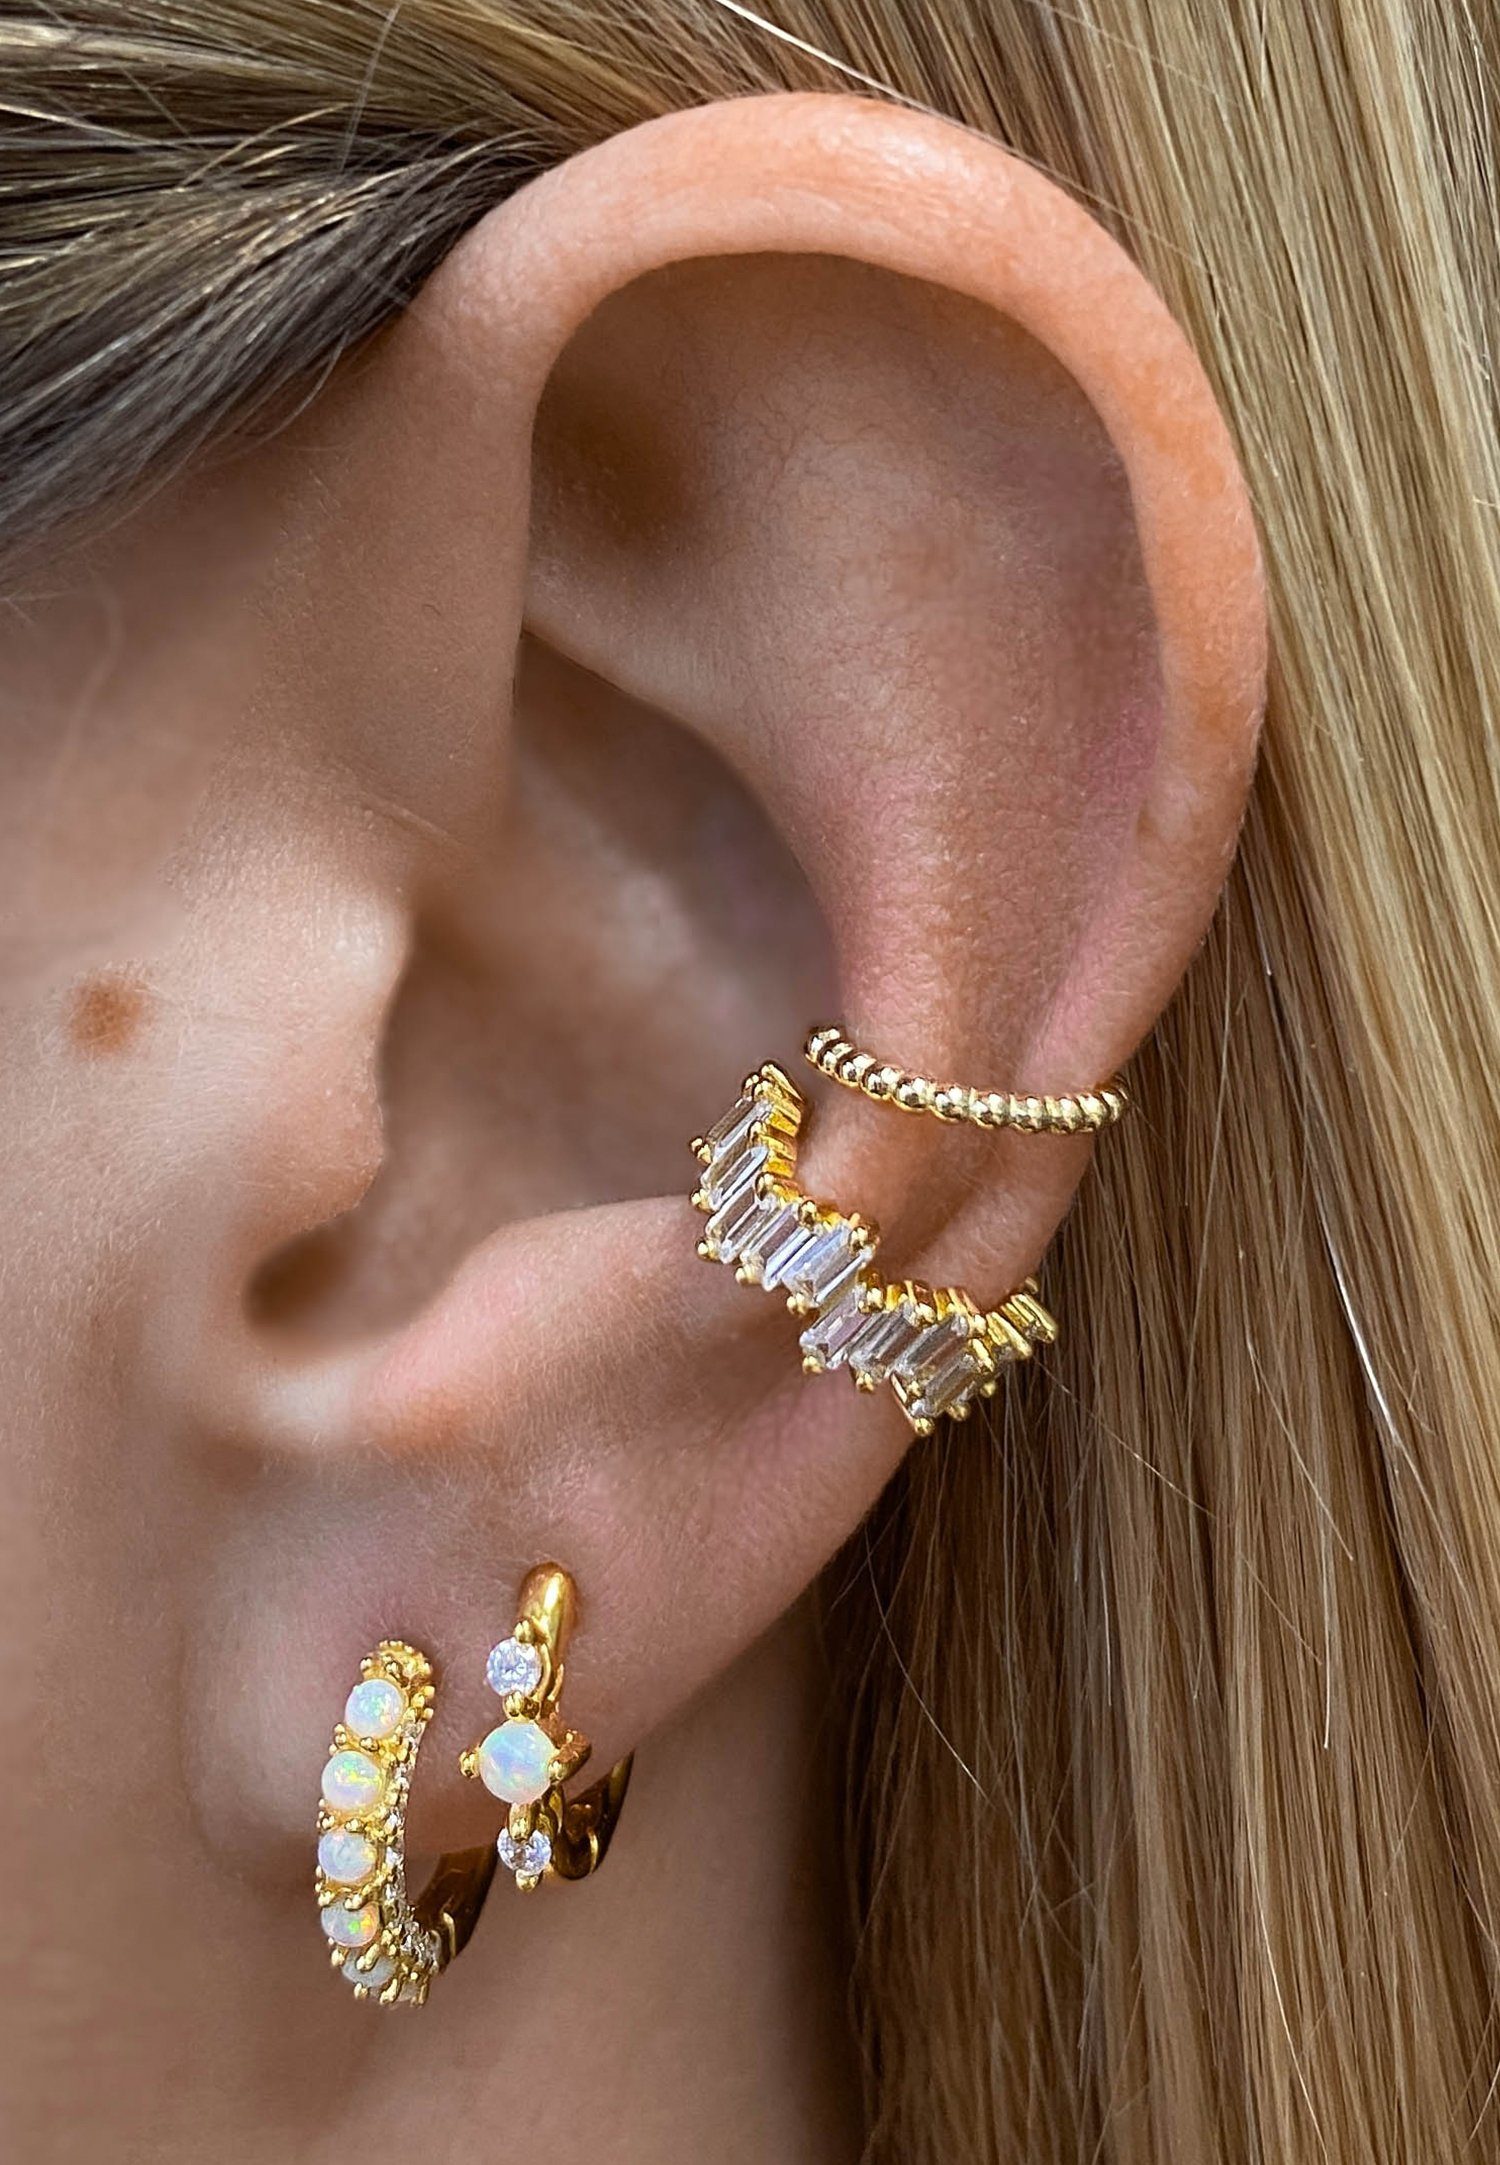 weiße Brandlinger Brisbane, vergoldet, Zirkoniasteine und Silber Creolen Weißer Ohrringe Paar Opal 925